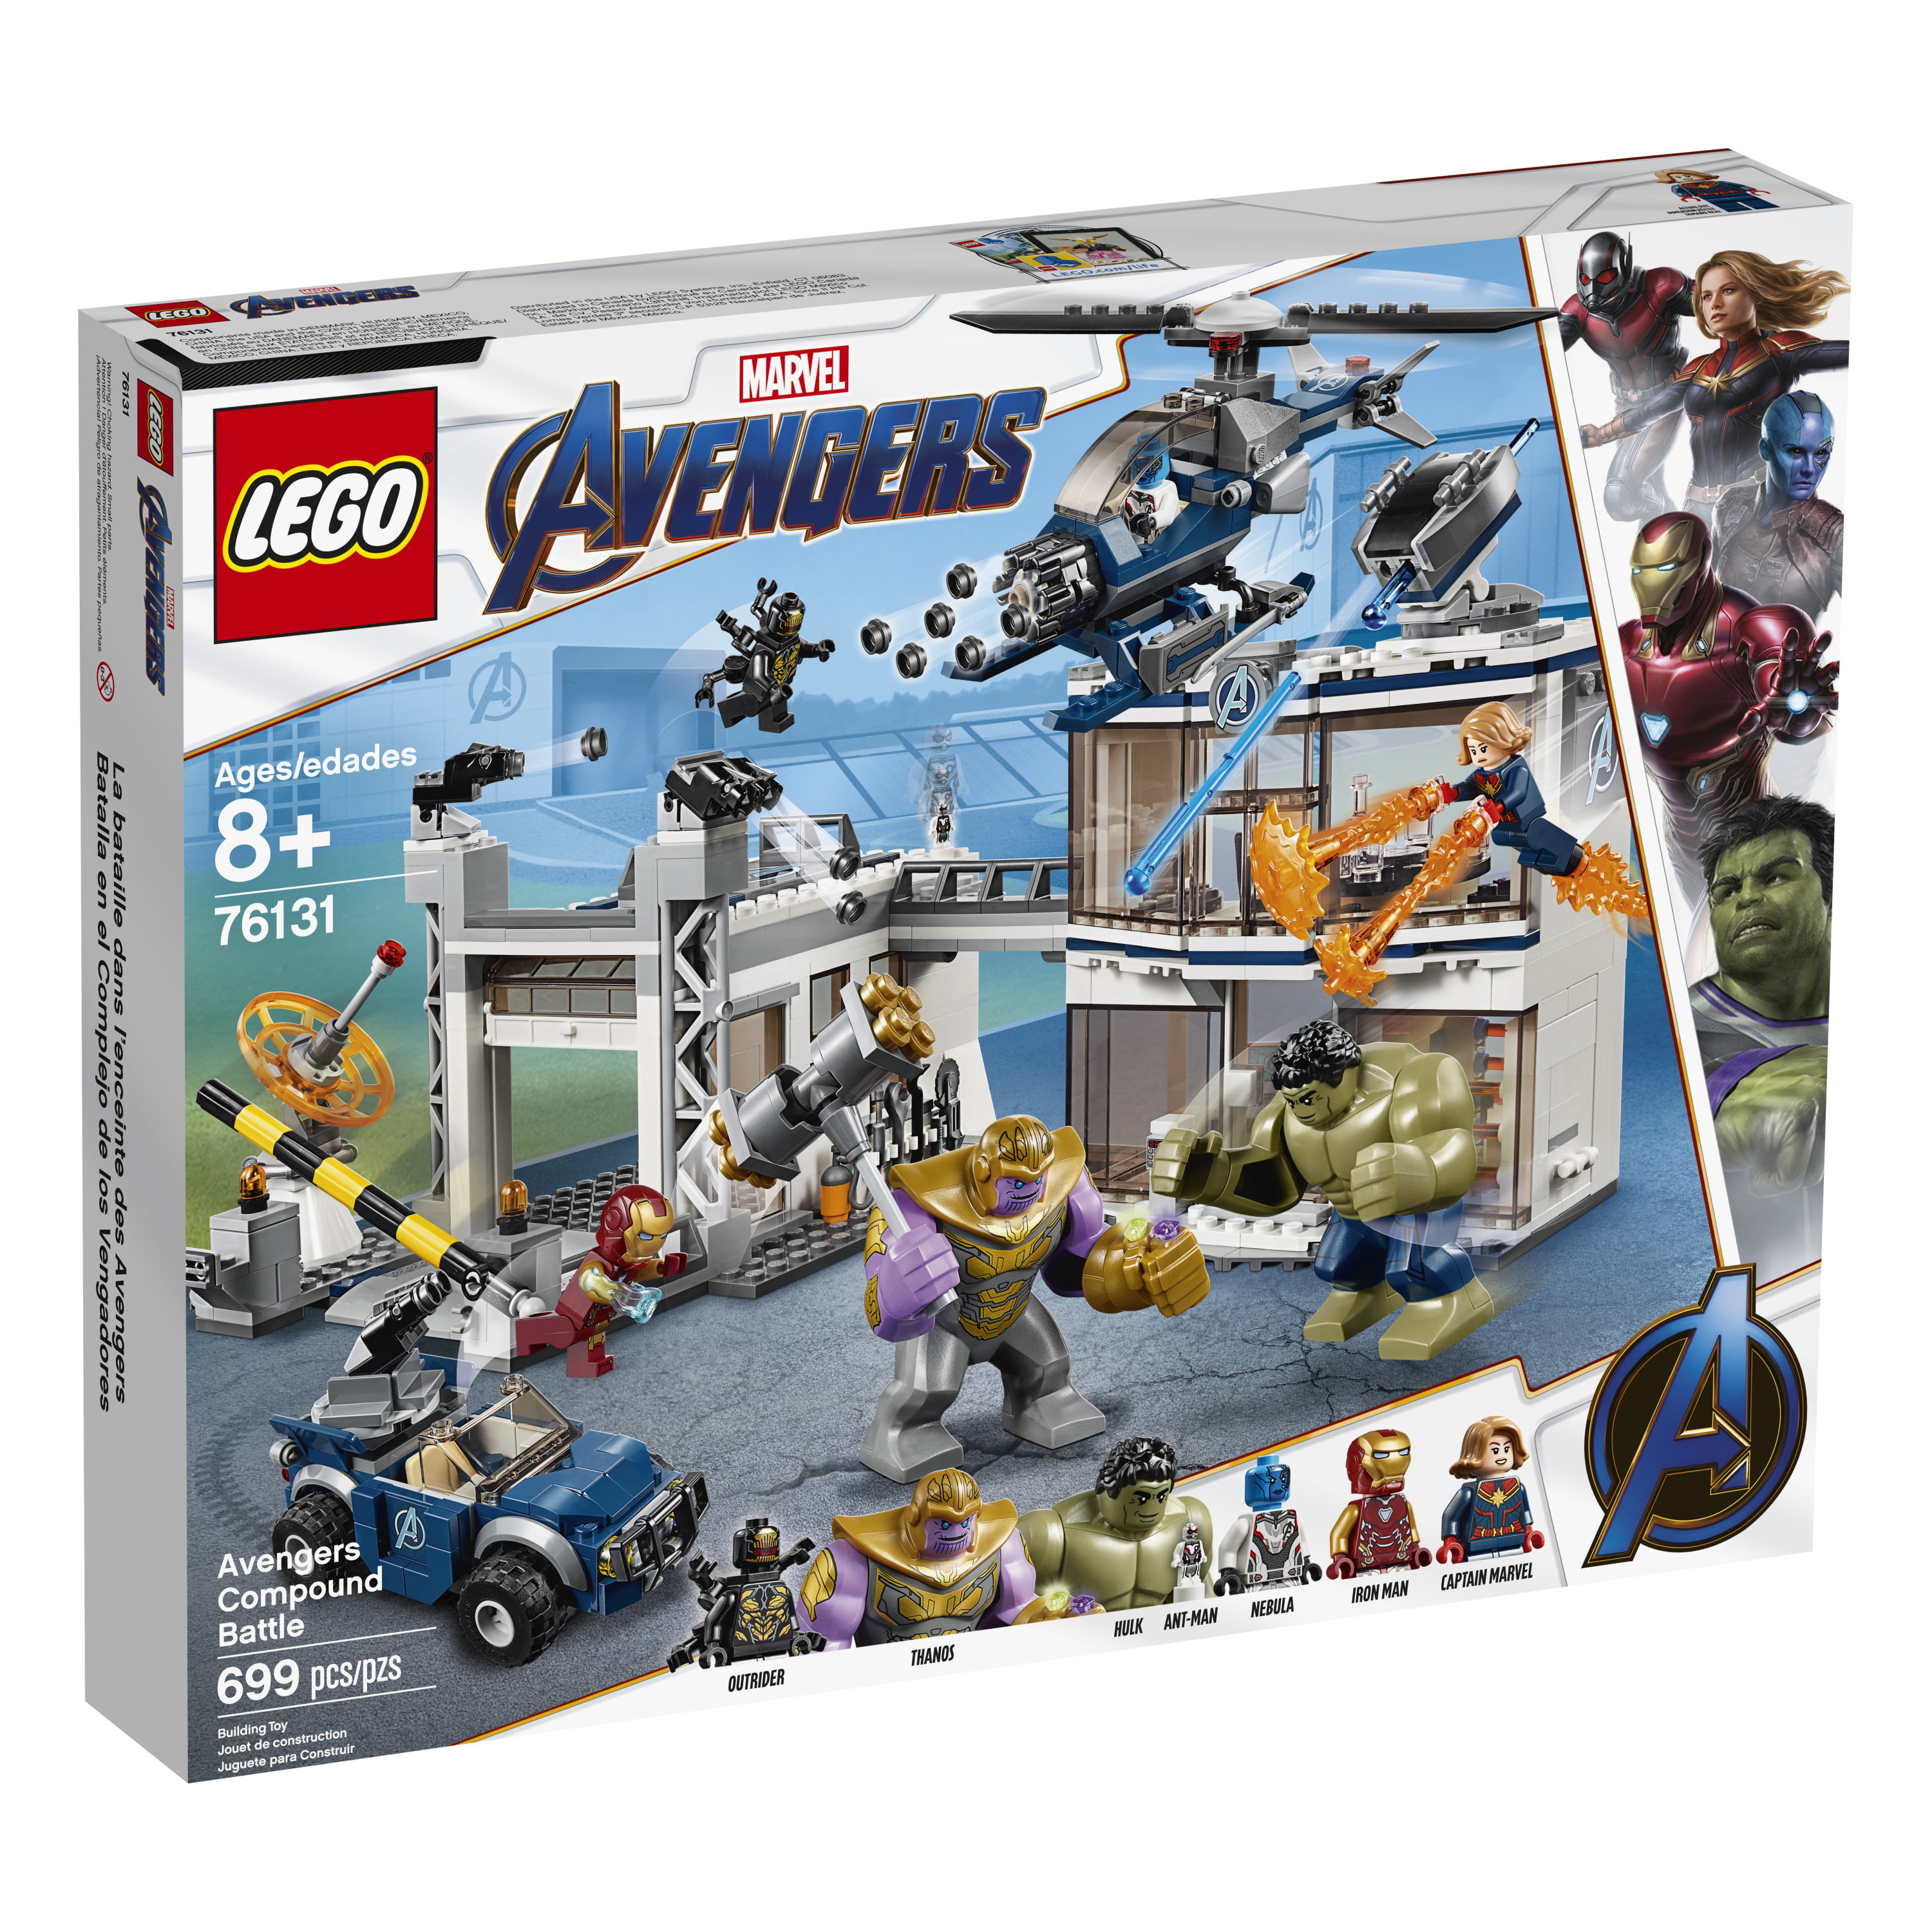 Venom Block Micro Lego Marvel Avengers 